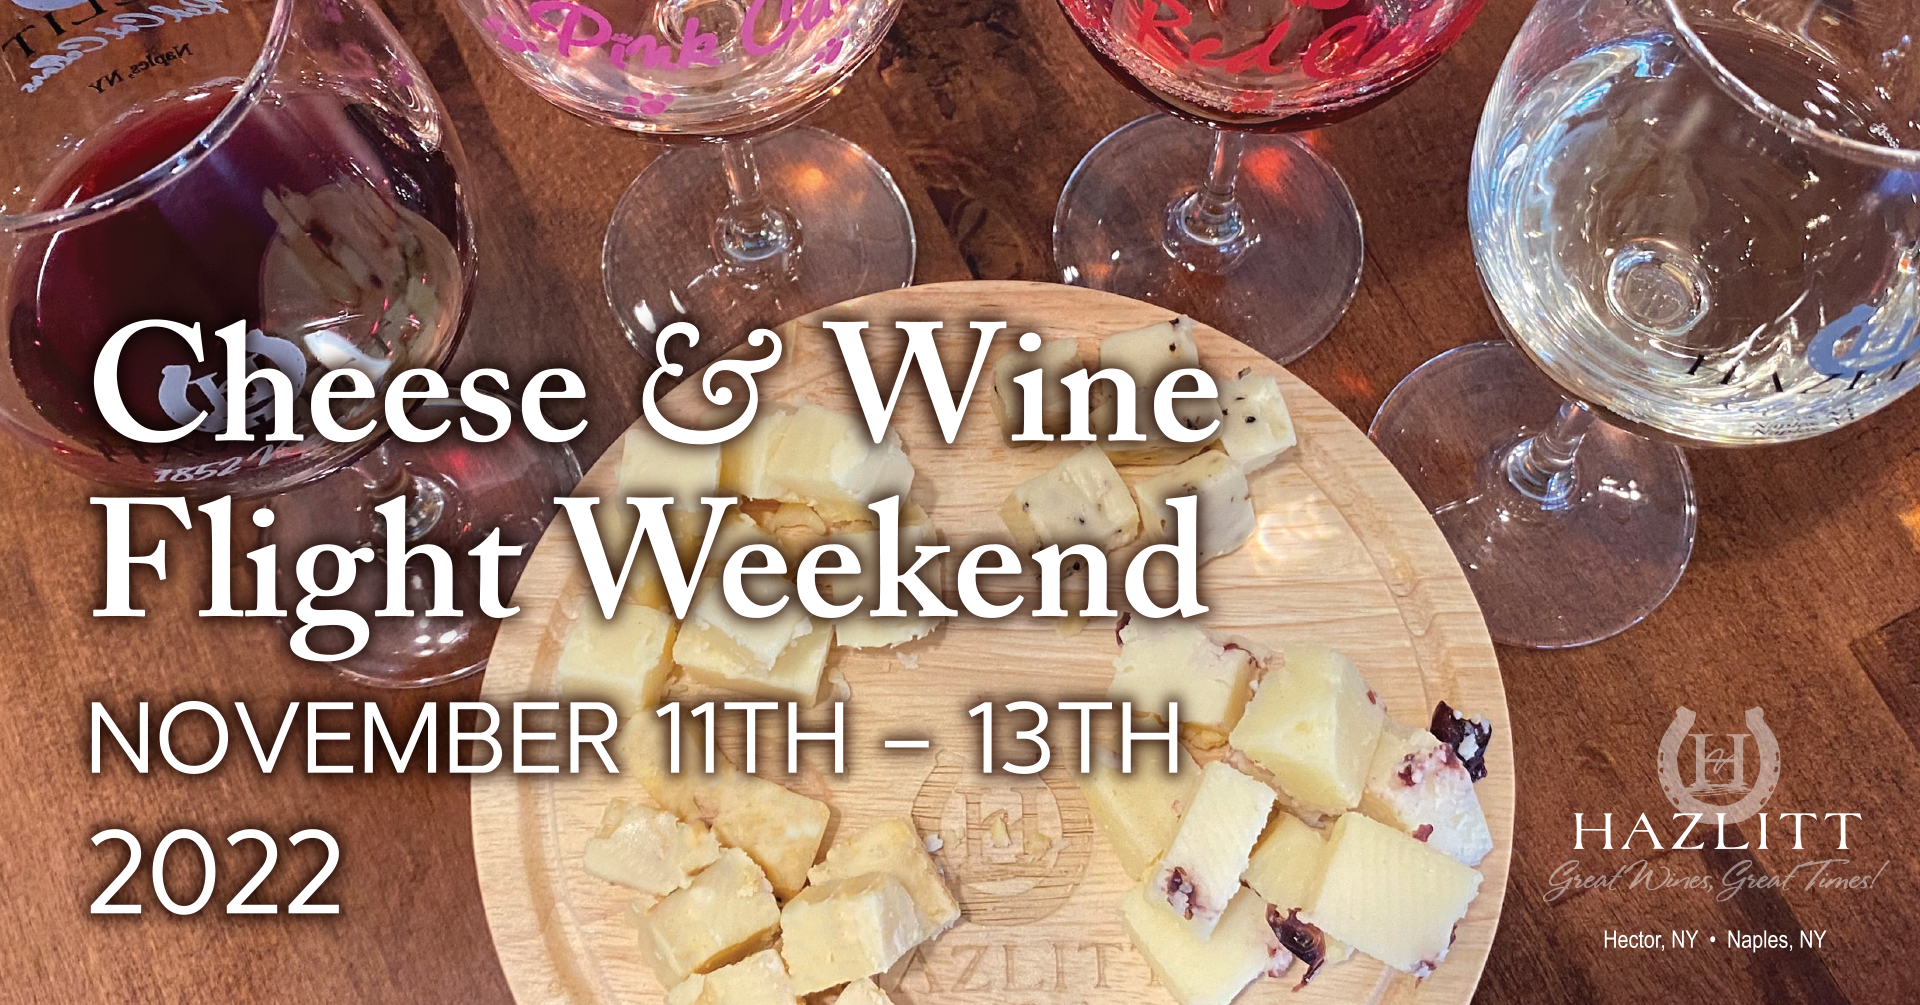 Cheese & Wine Flight Weekend November 11-13, 2022